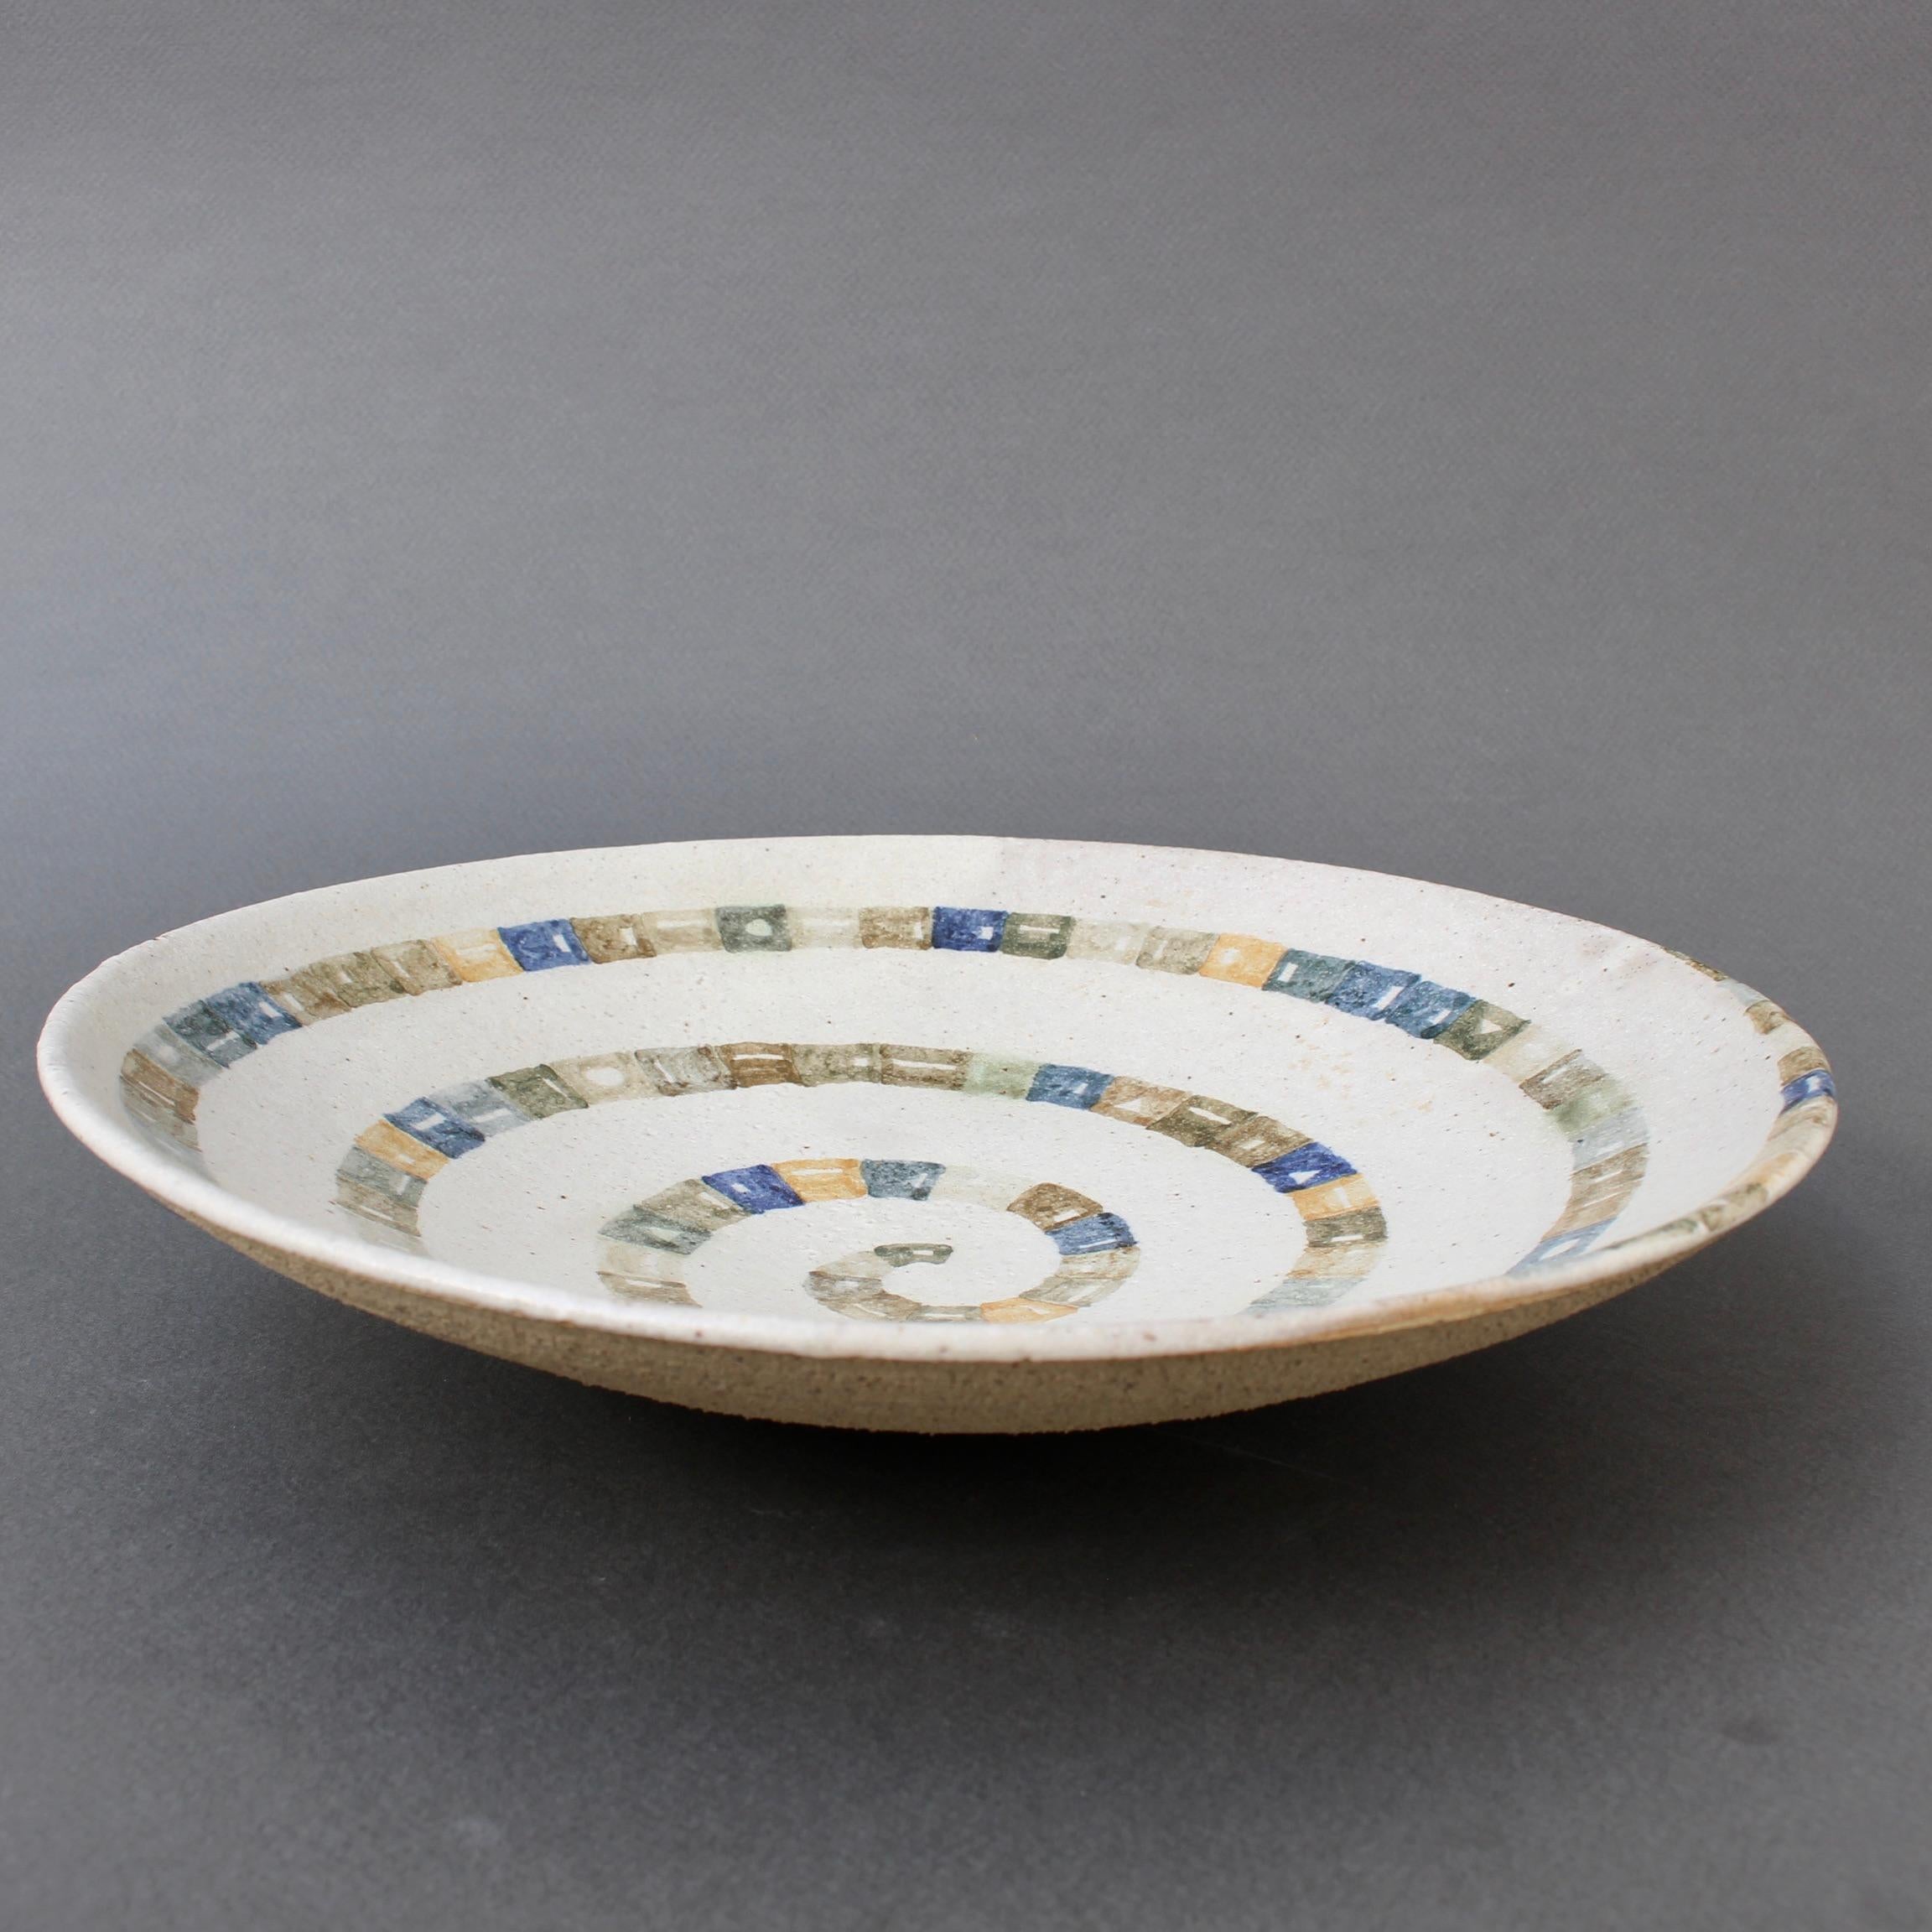 Italian Ceramic Decorative Bowl by Bruno Gambone (circa 1980s) For Sale 11